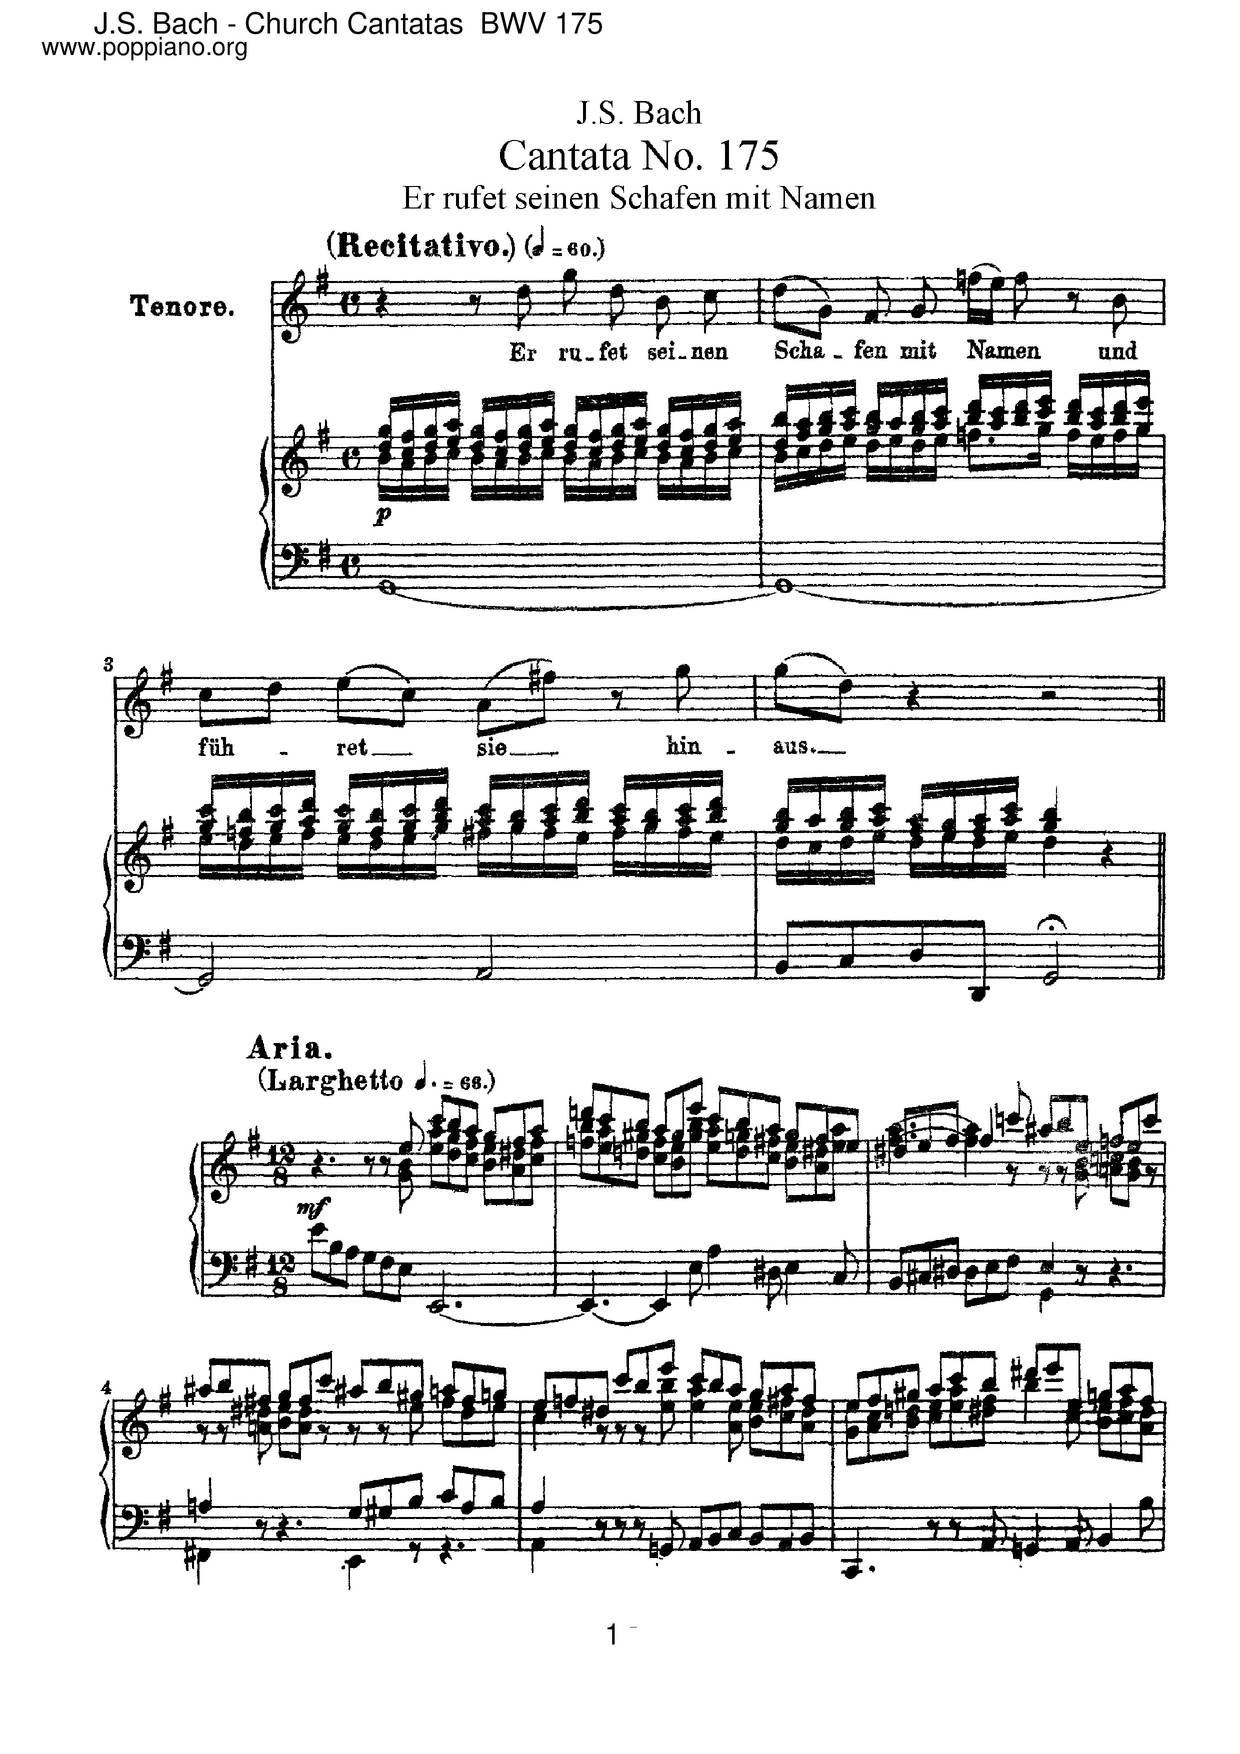 Er Rufet Seinen Schafen Mit Namen, BWV 175ピアノ譜